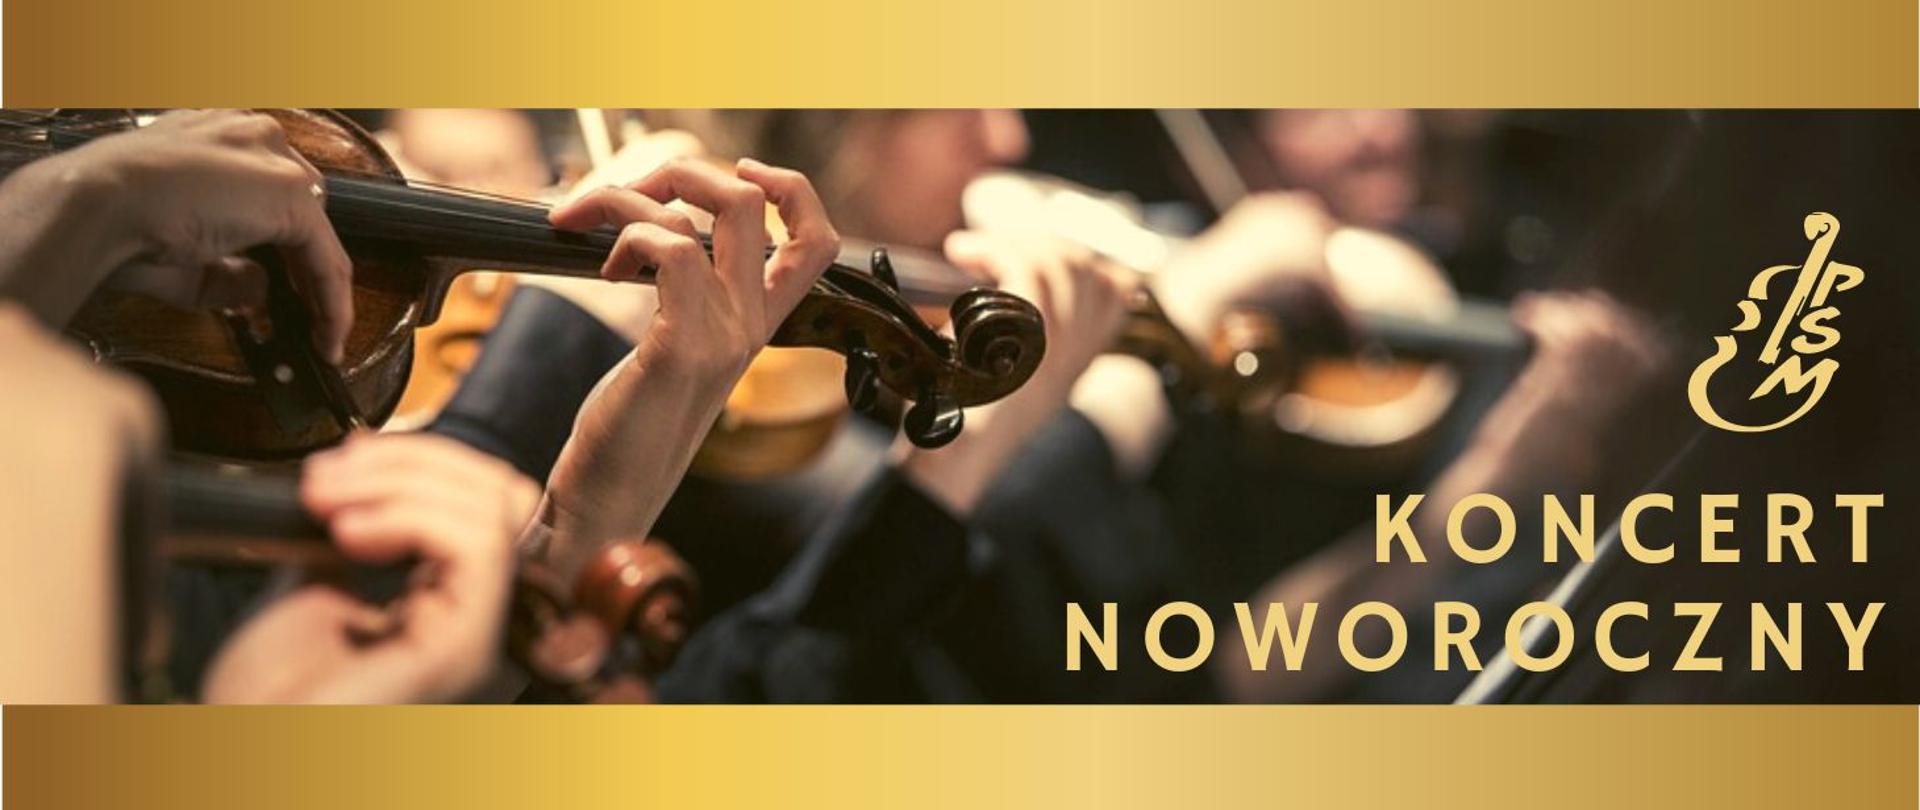 Grafika przedstawia zdjęcie orkiestry, zbliżenie na ręce grających skrzypków, na górze i pod zdjęciem złoty pasek, po prawej logo szkoły i napis "Koncert Noworoczny"